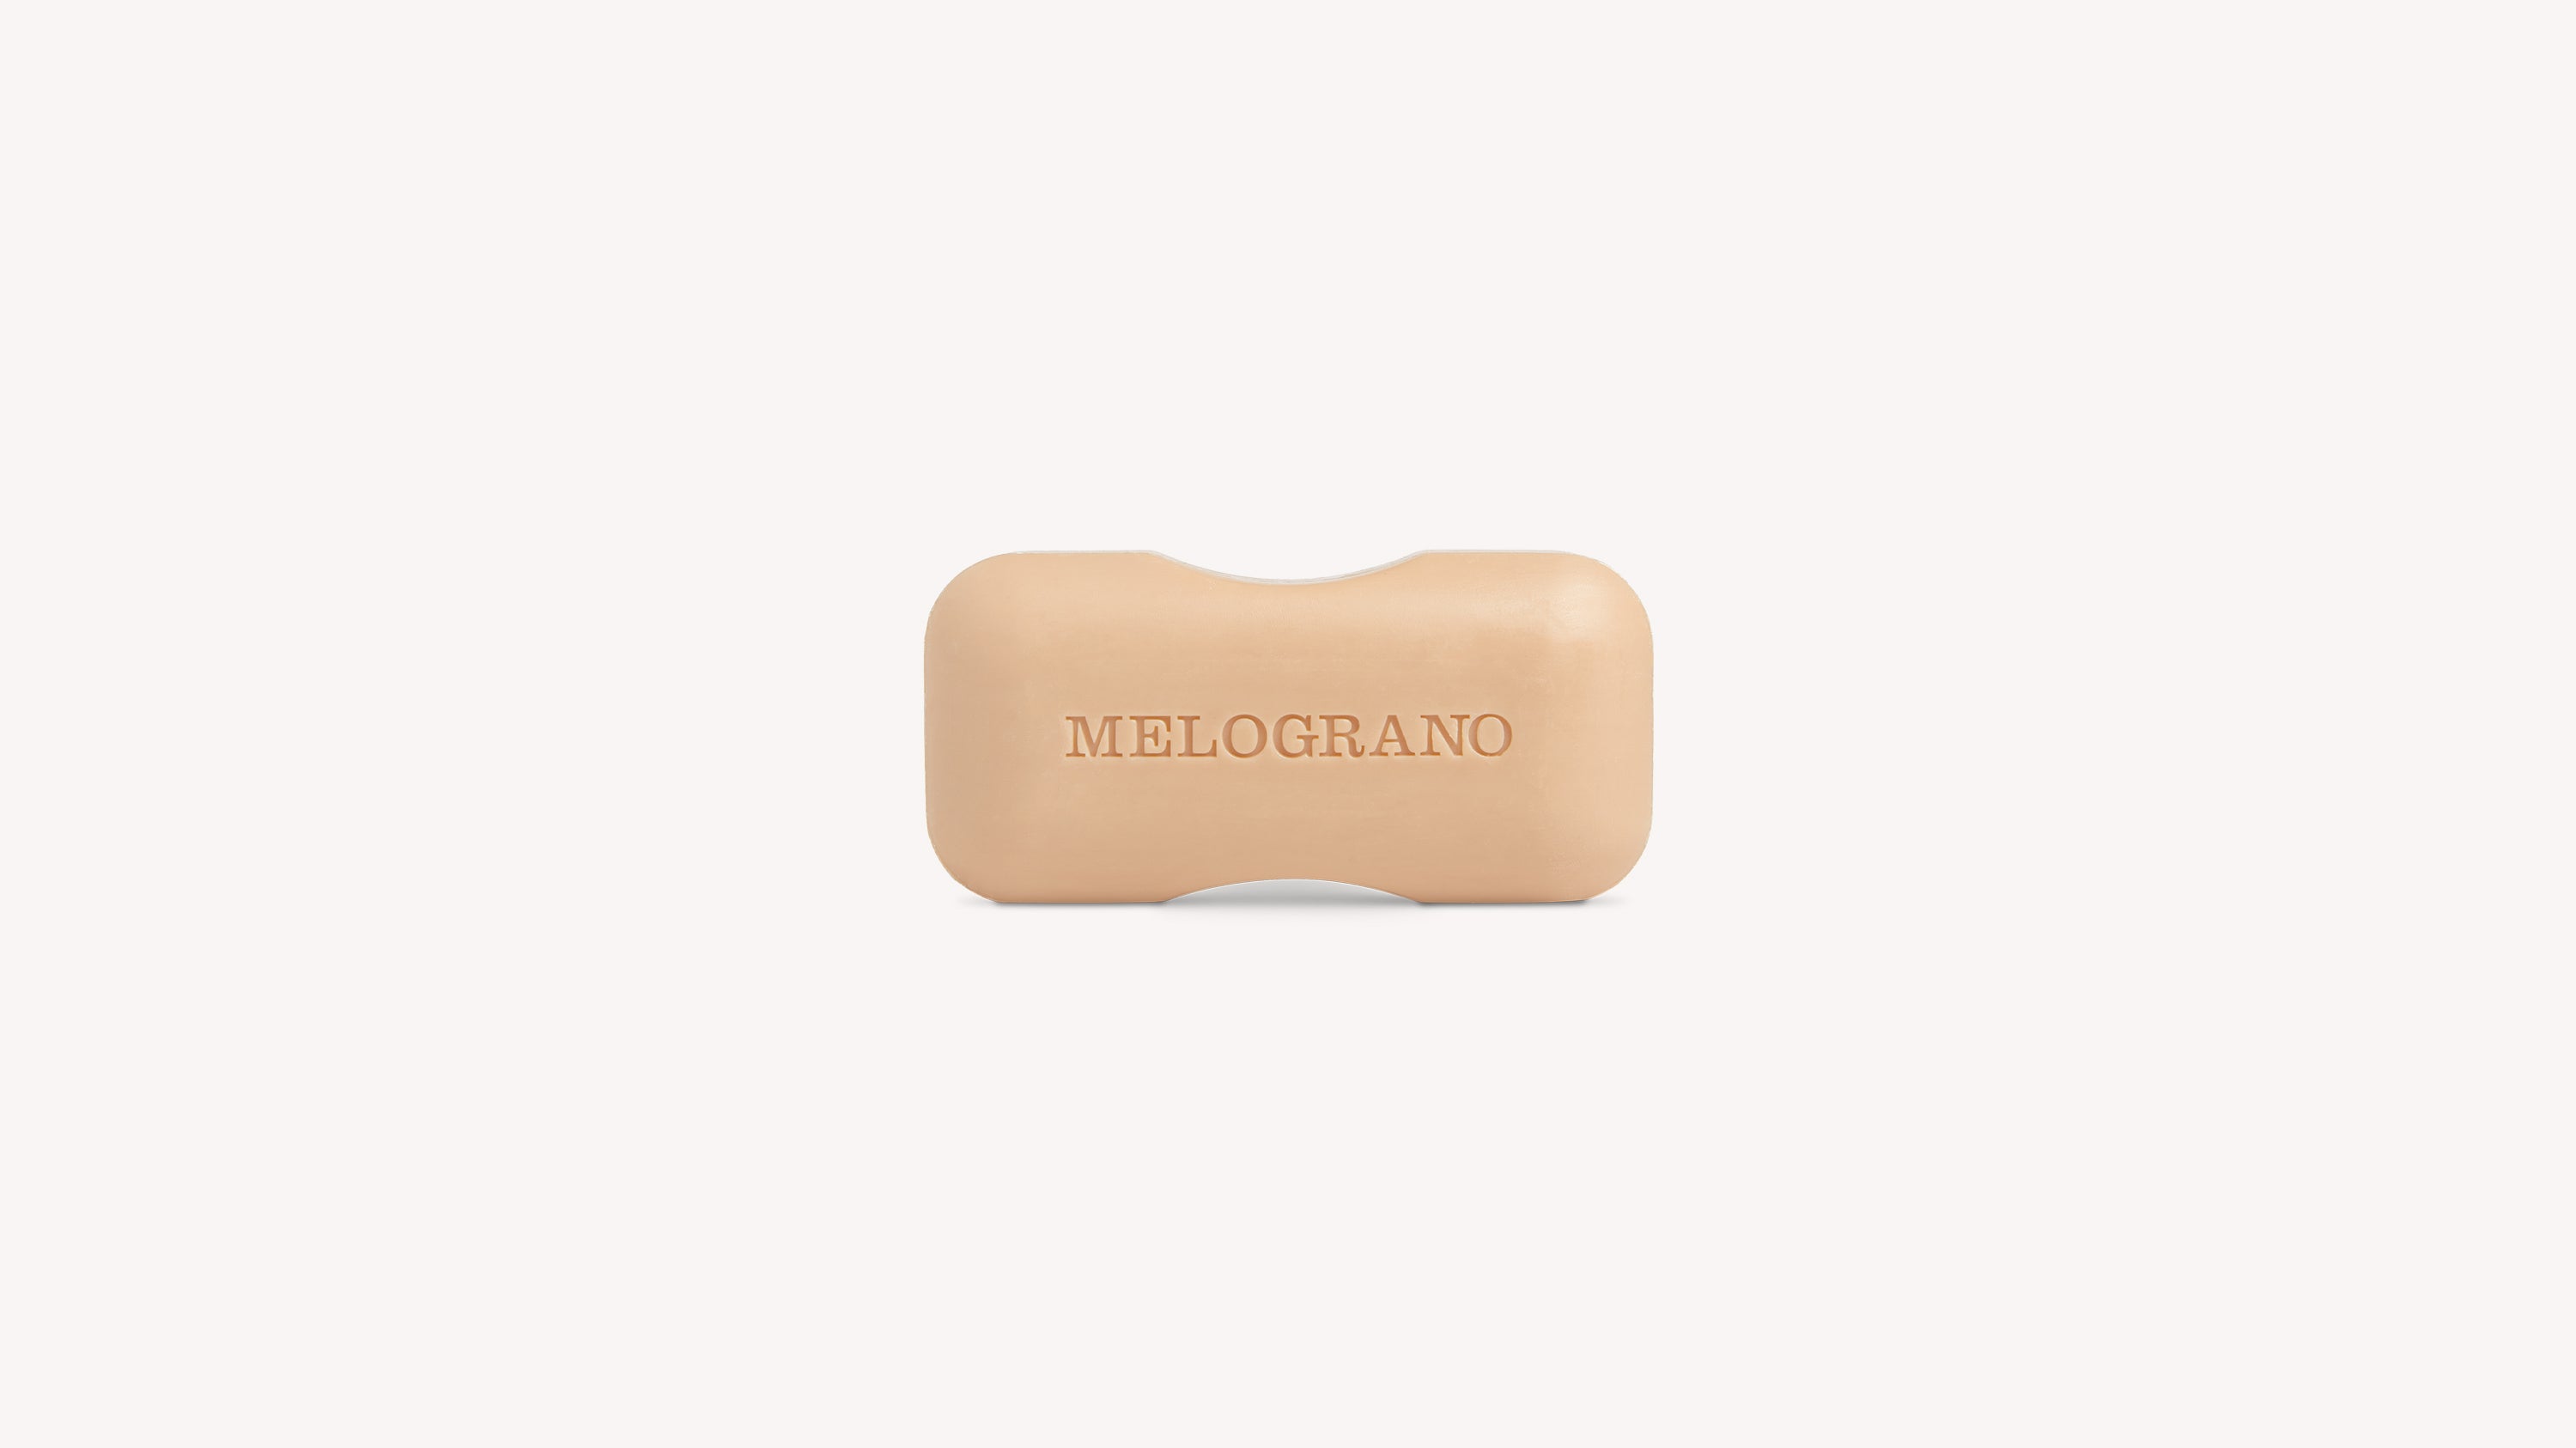 Melograno Soap Body Care officina-smn-usa-ca.myshopify.com Officina Profumo Farmaceutica di Santa Maria Novella - US